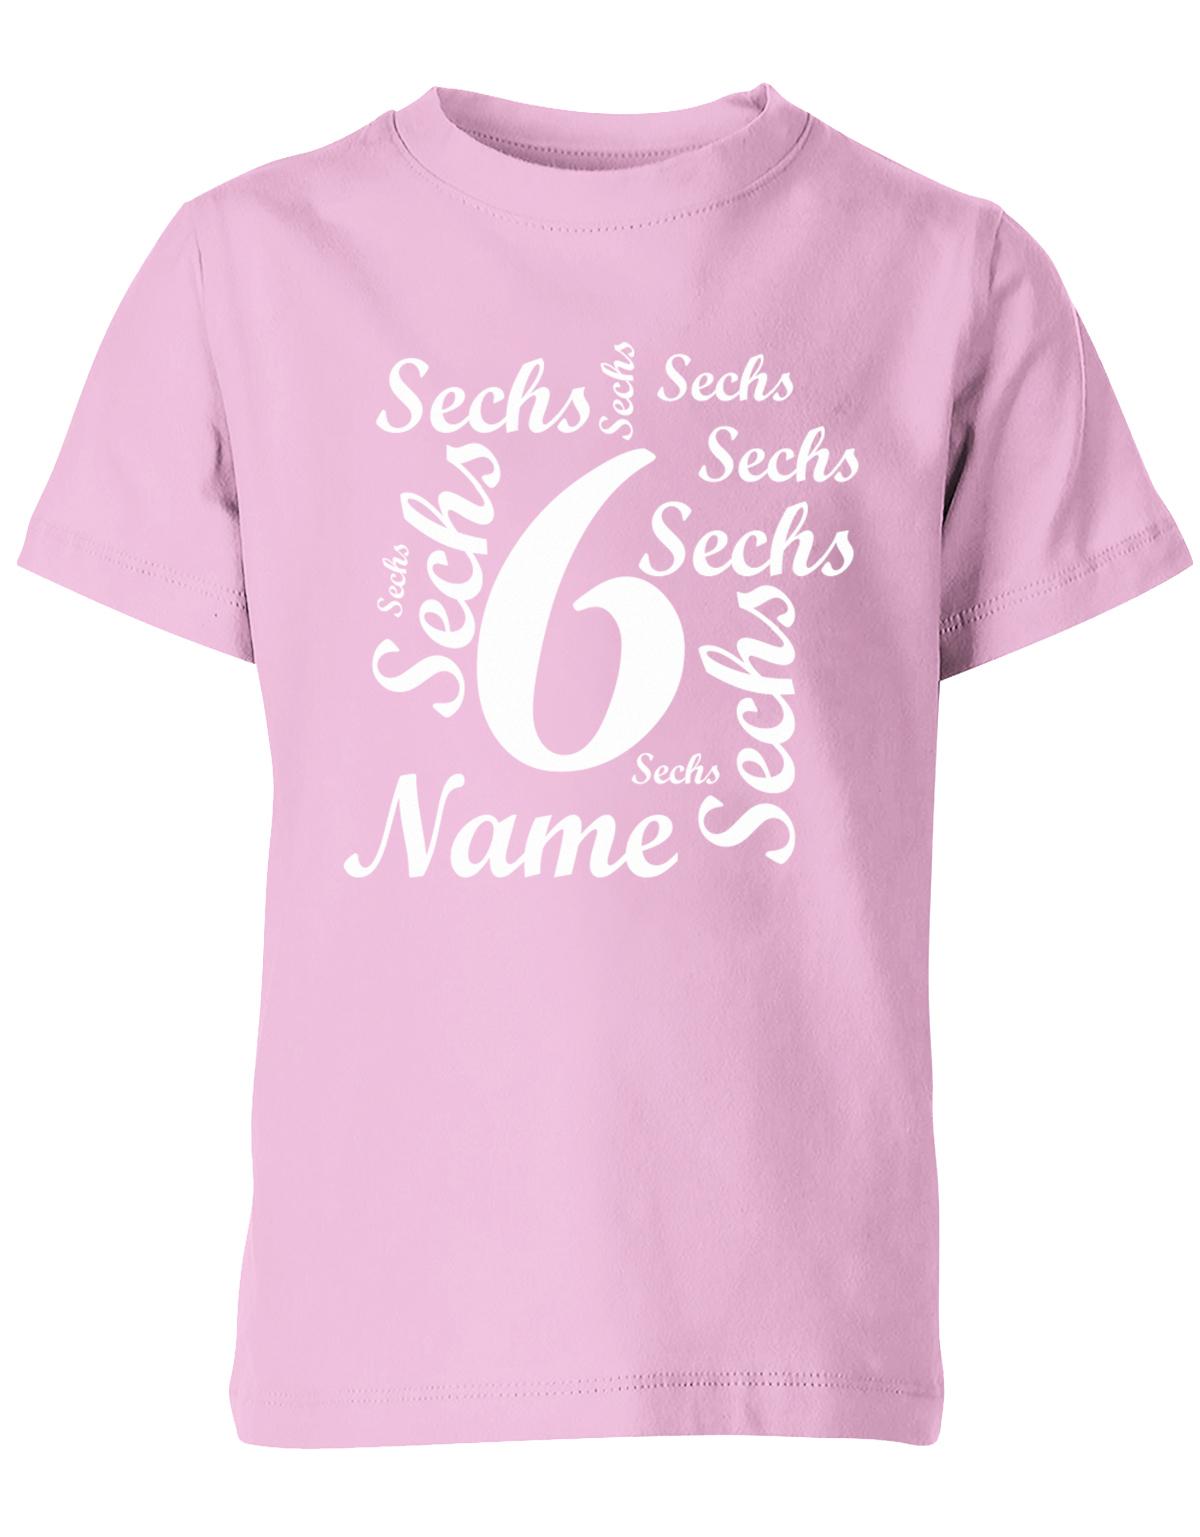 ich-bin-6-viele-sechsen-mit-name-geburtstag-kinder-shirt-rosa